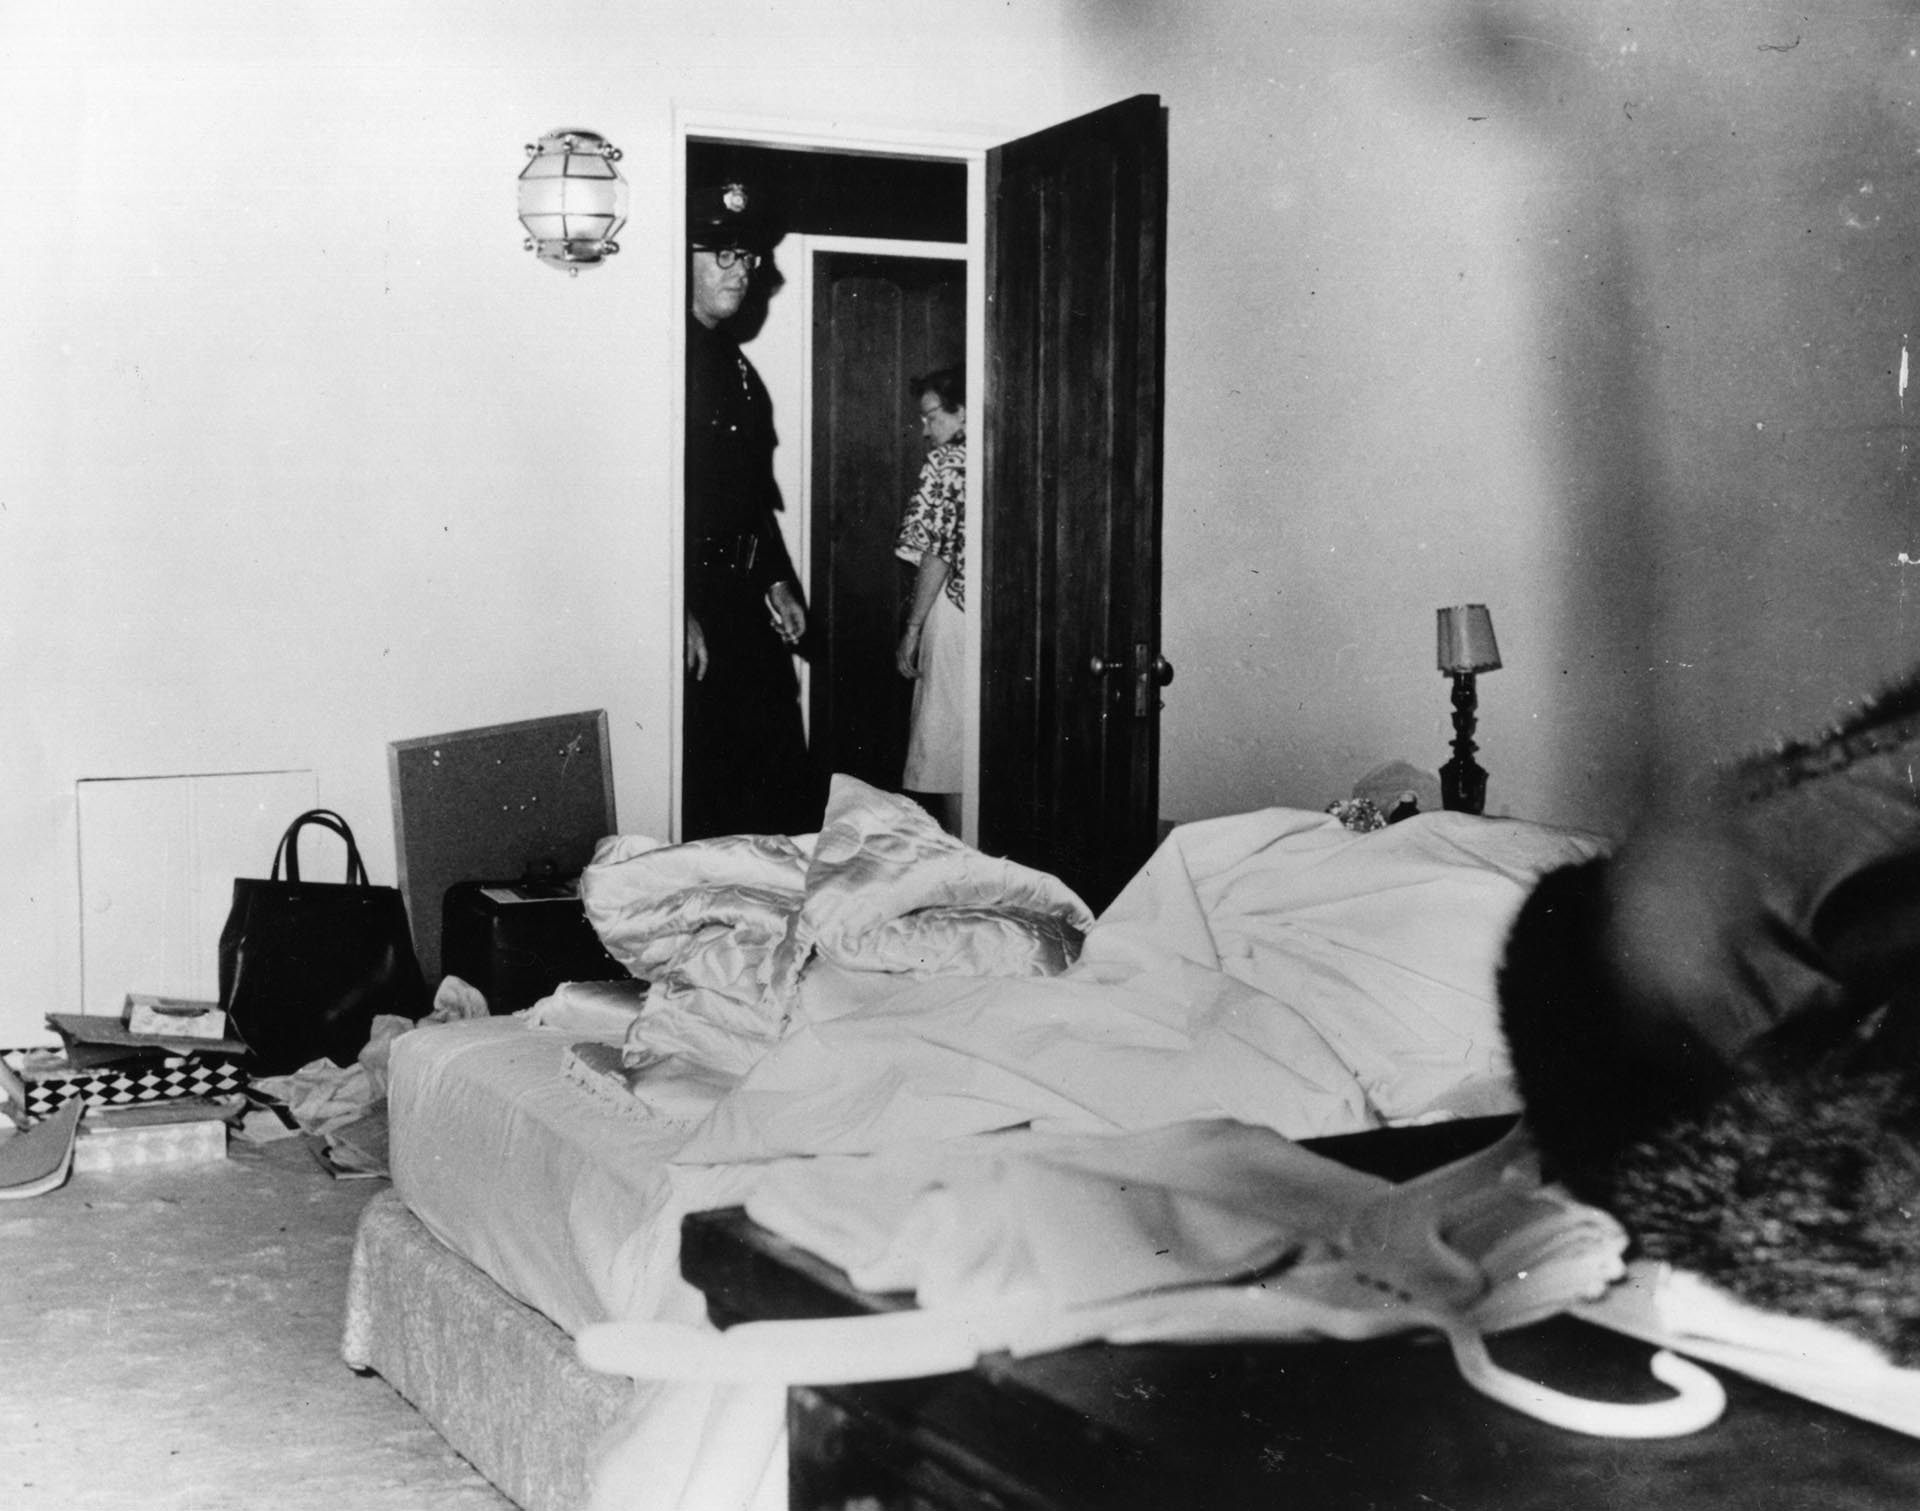 La habitación donde hallaron muerta a Marilyn (Getty Images)